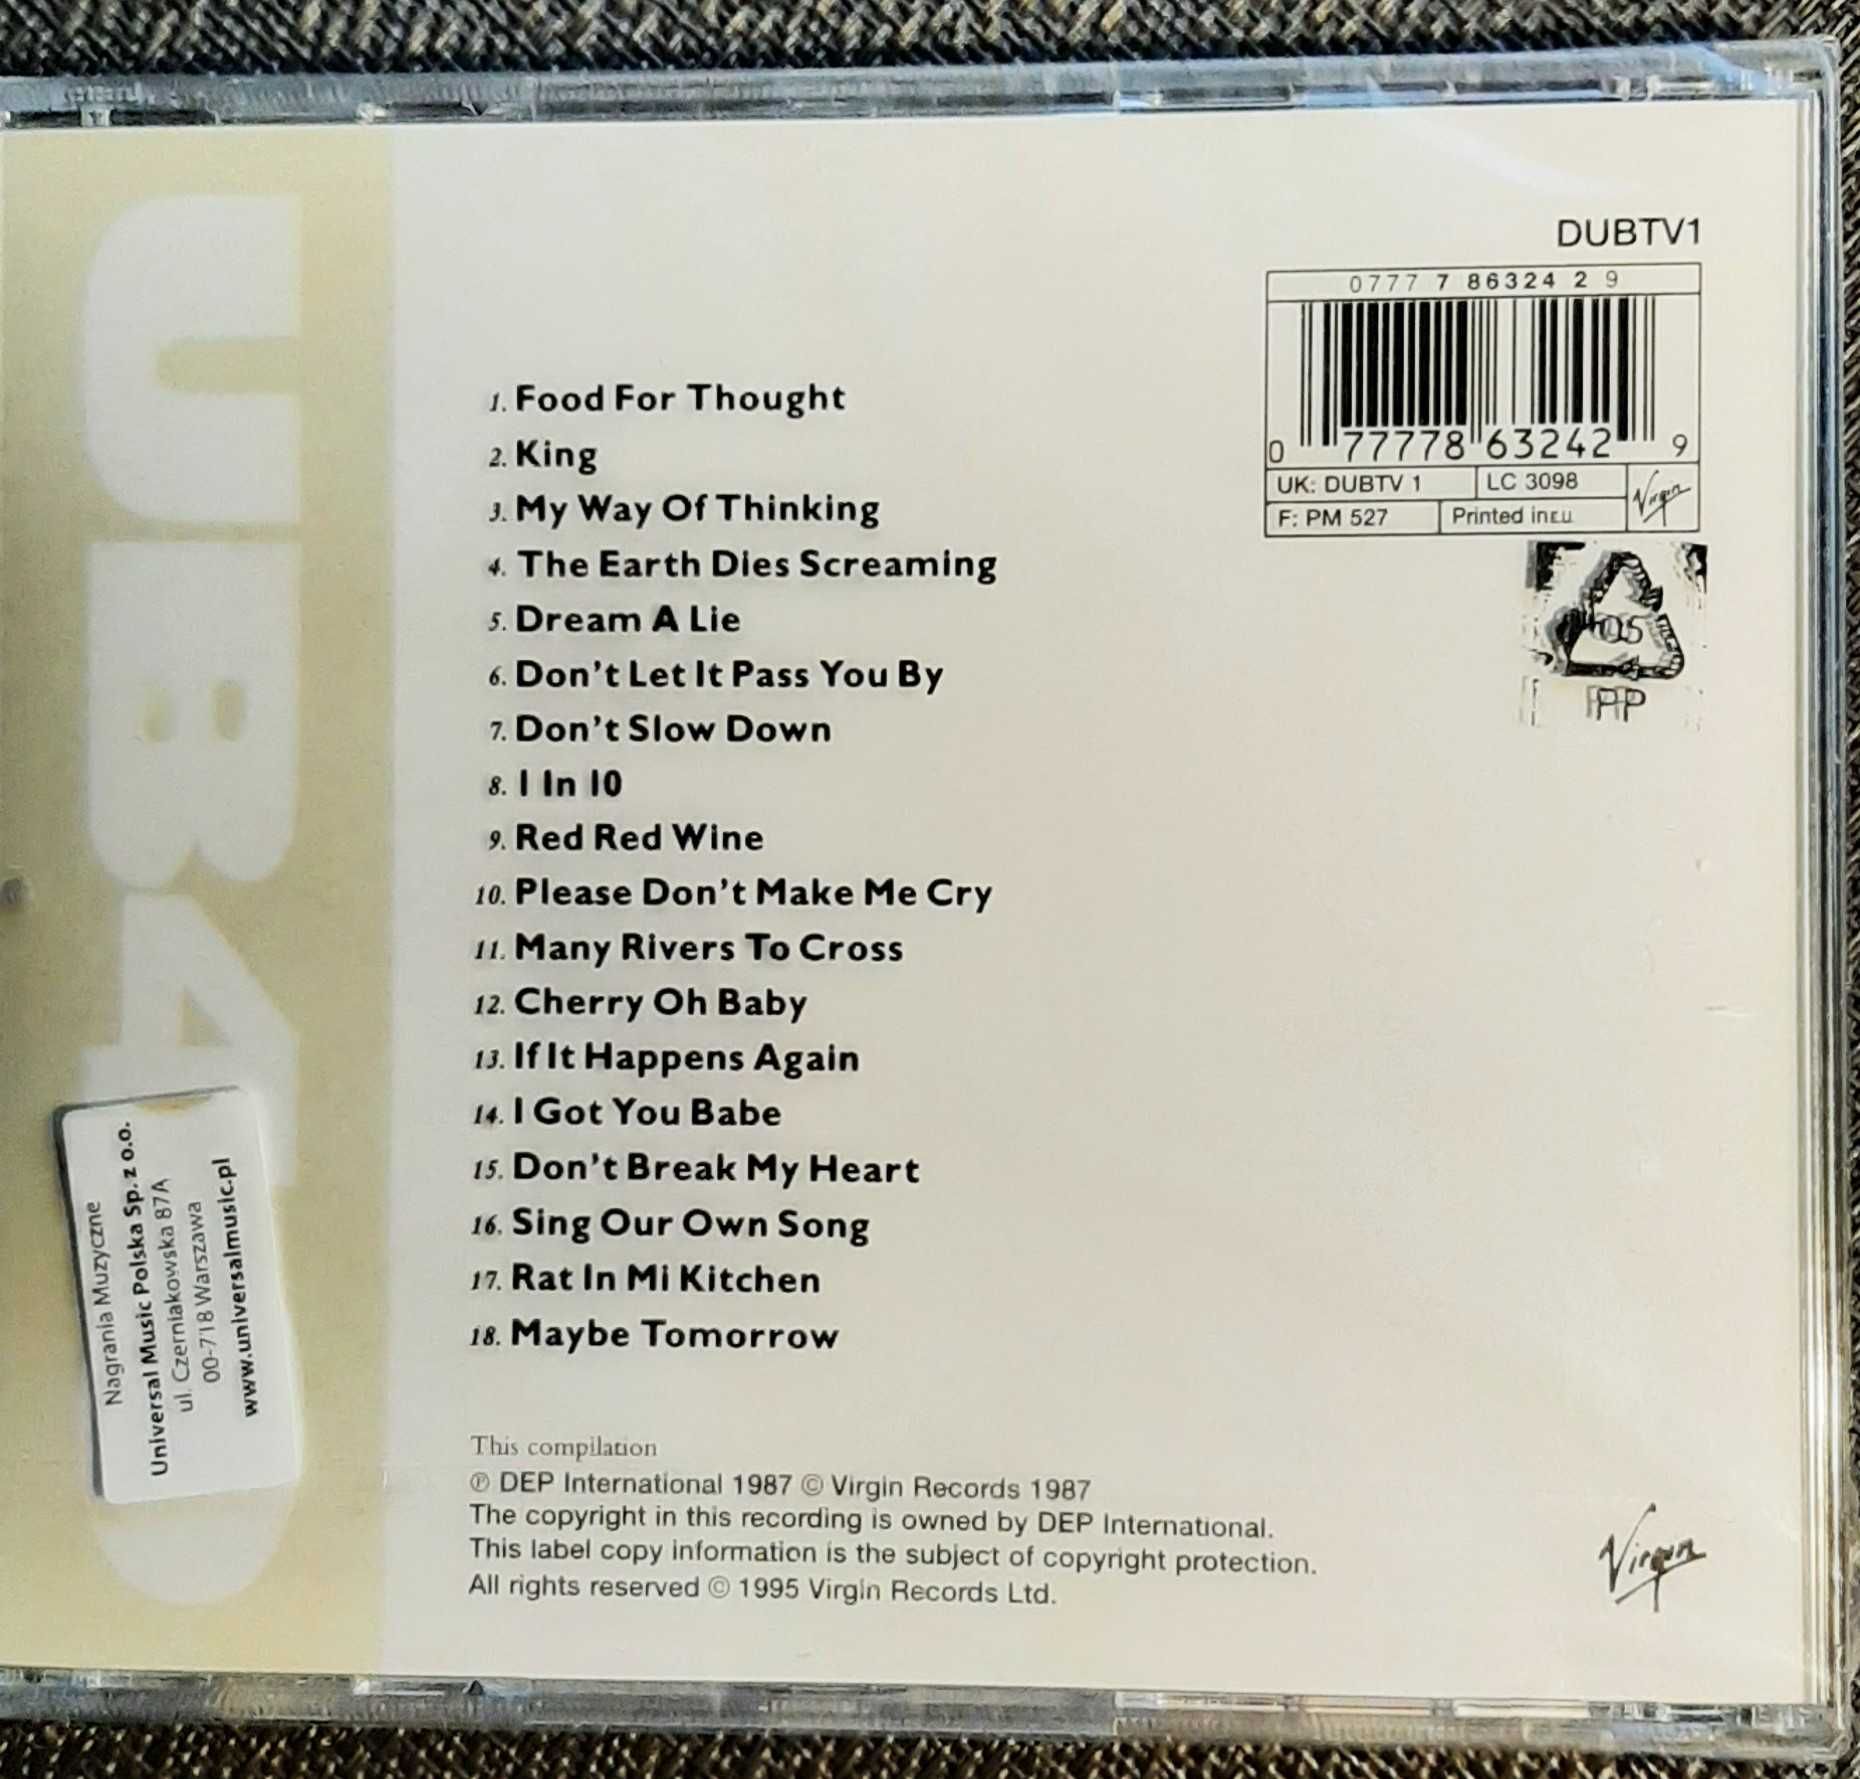 Polecam Wspaniały Album CD - UB40 The Best of Volume One - CD